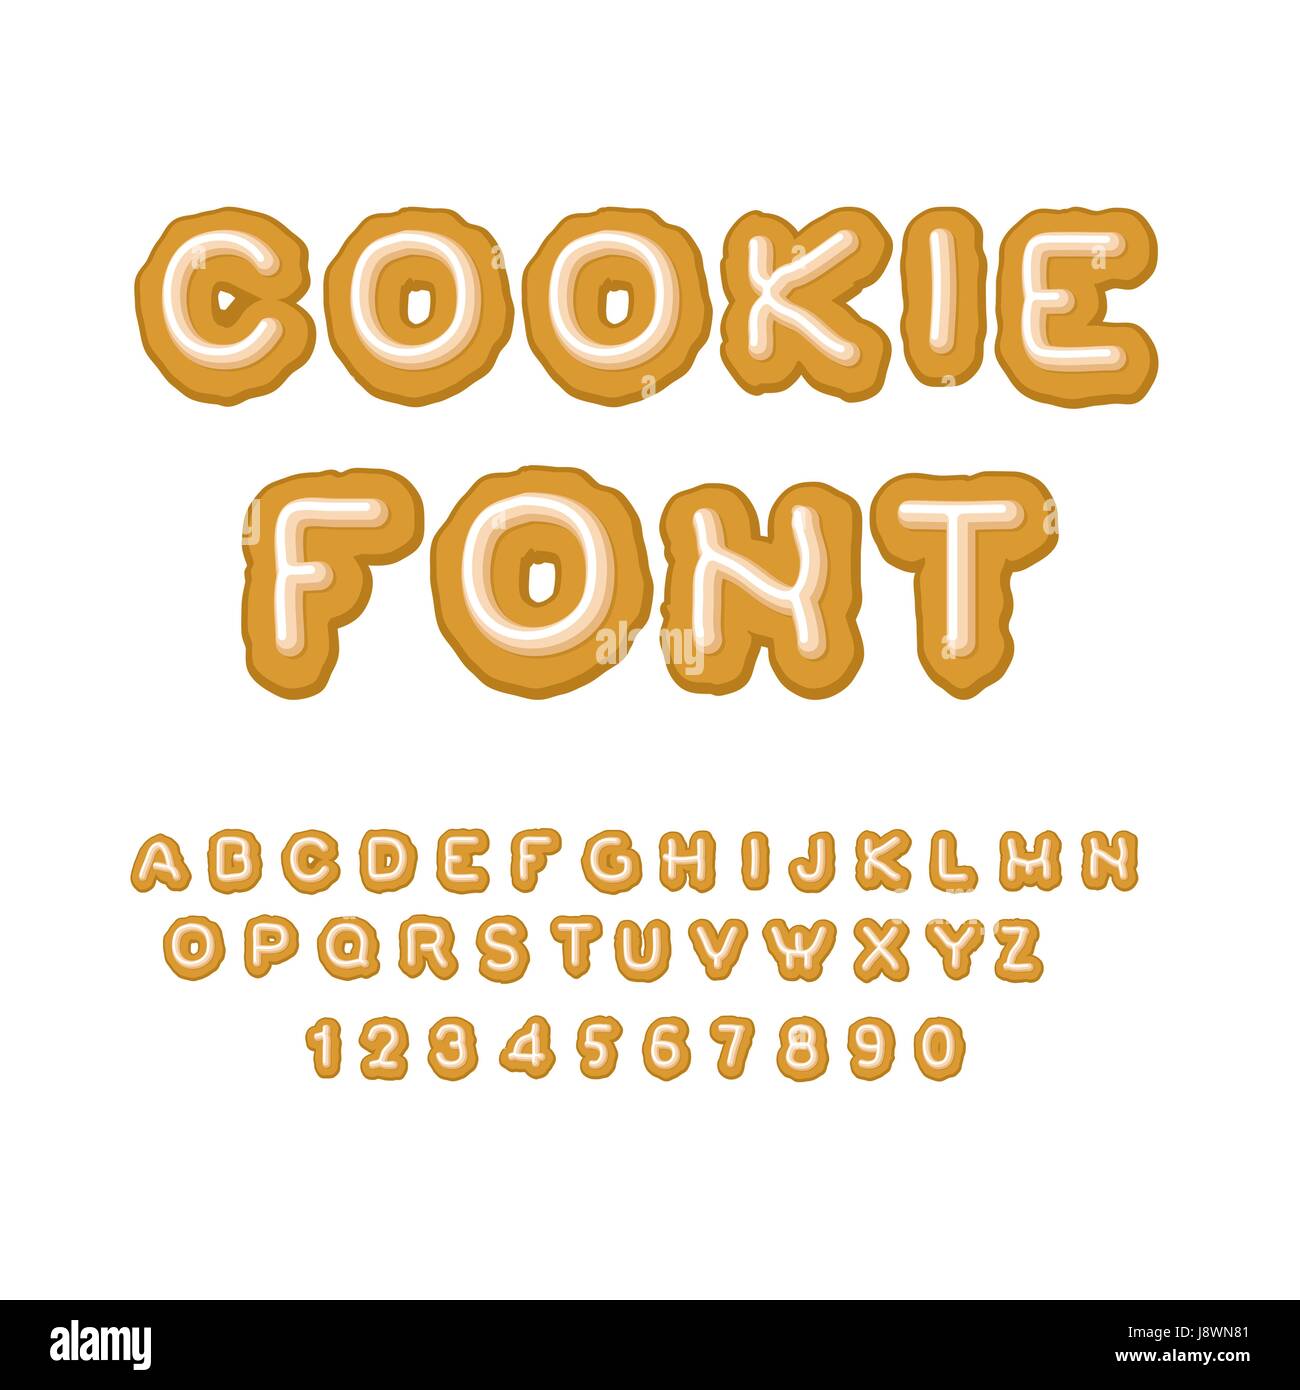 Edible Alphabet  Typography alphabet, Alphabet, Abc art